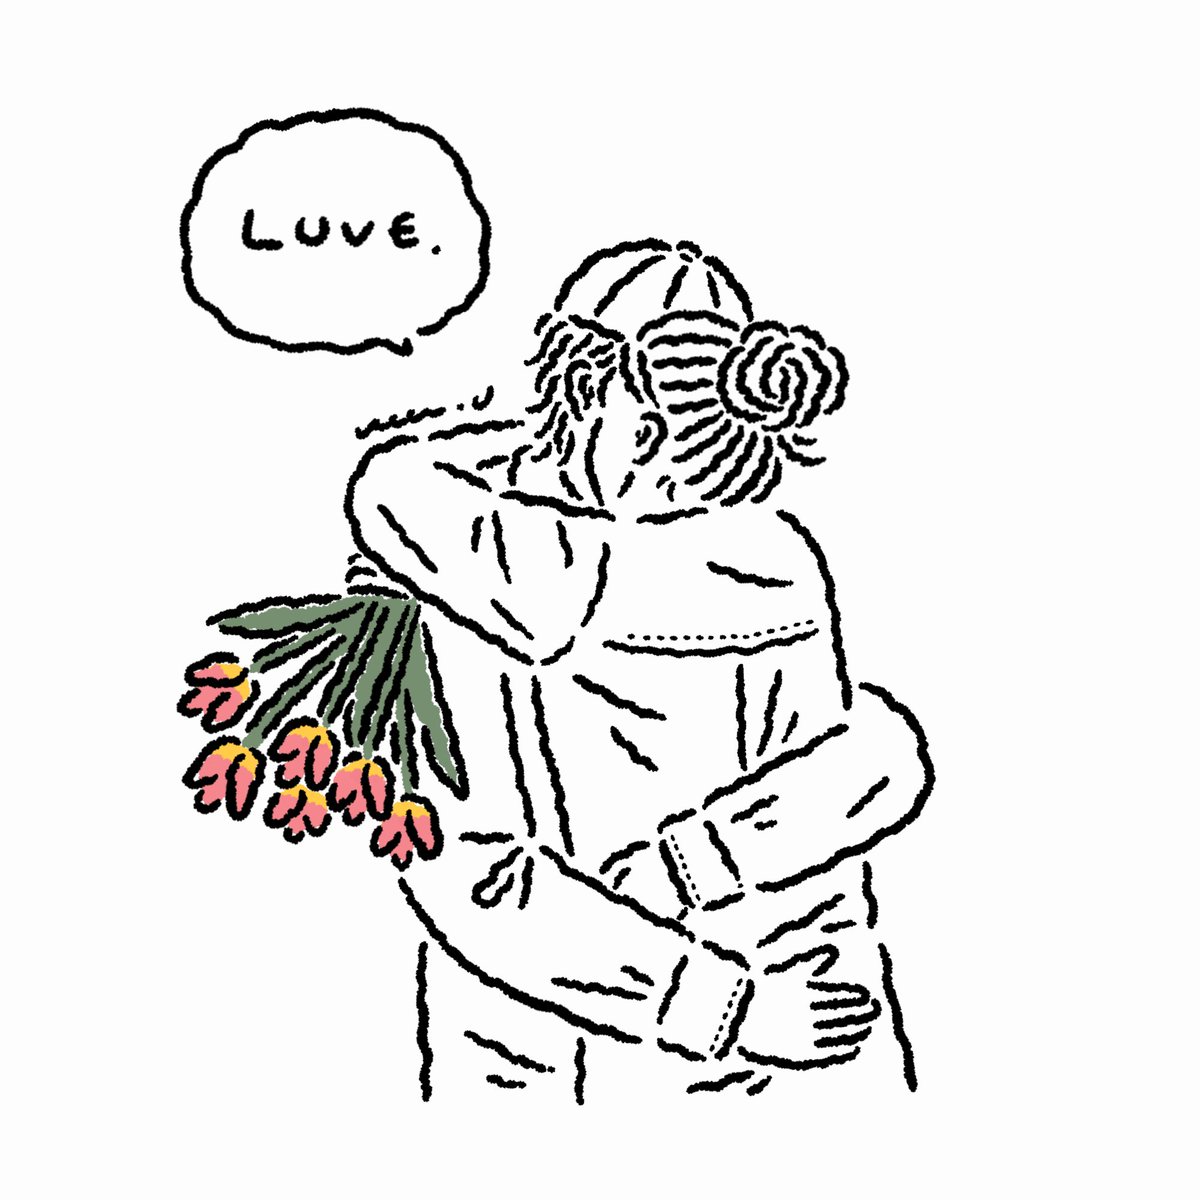 Let's hug♡
#イラスト #イラスト好きな人と繋がりたい #絵描きさんと繋がりたい 